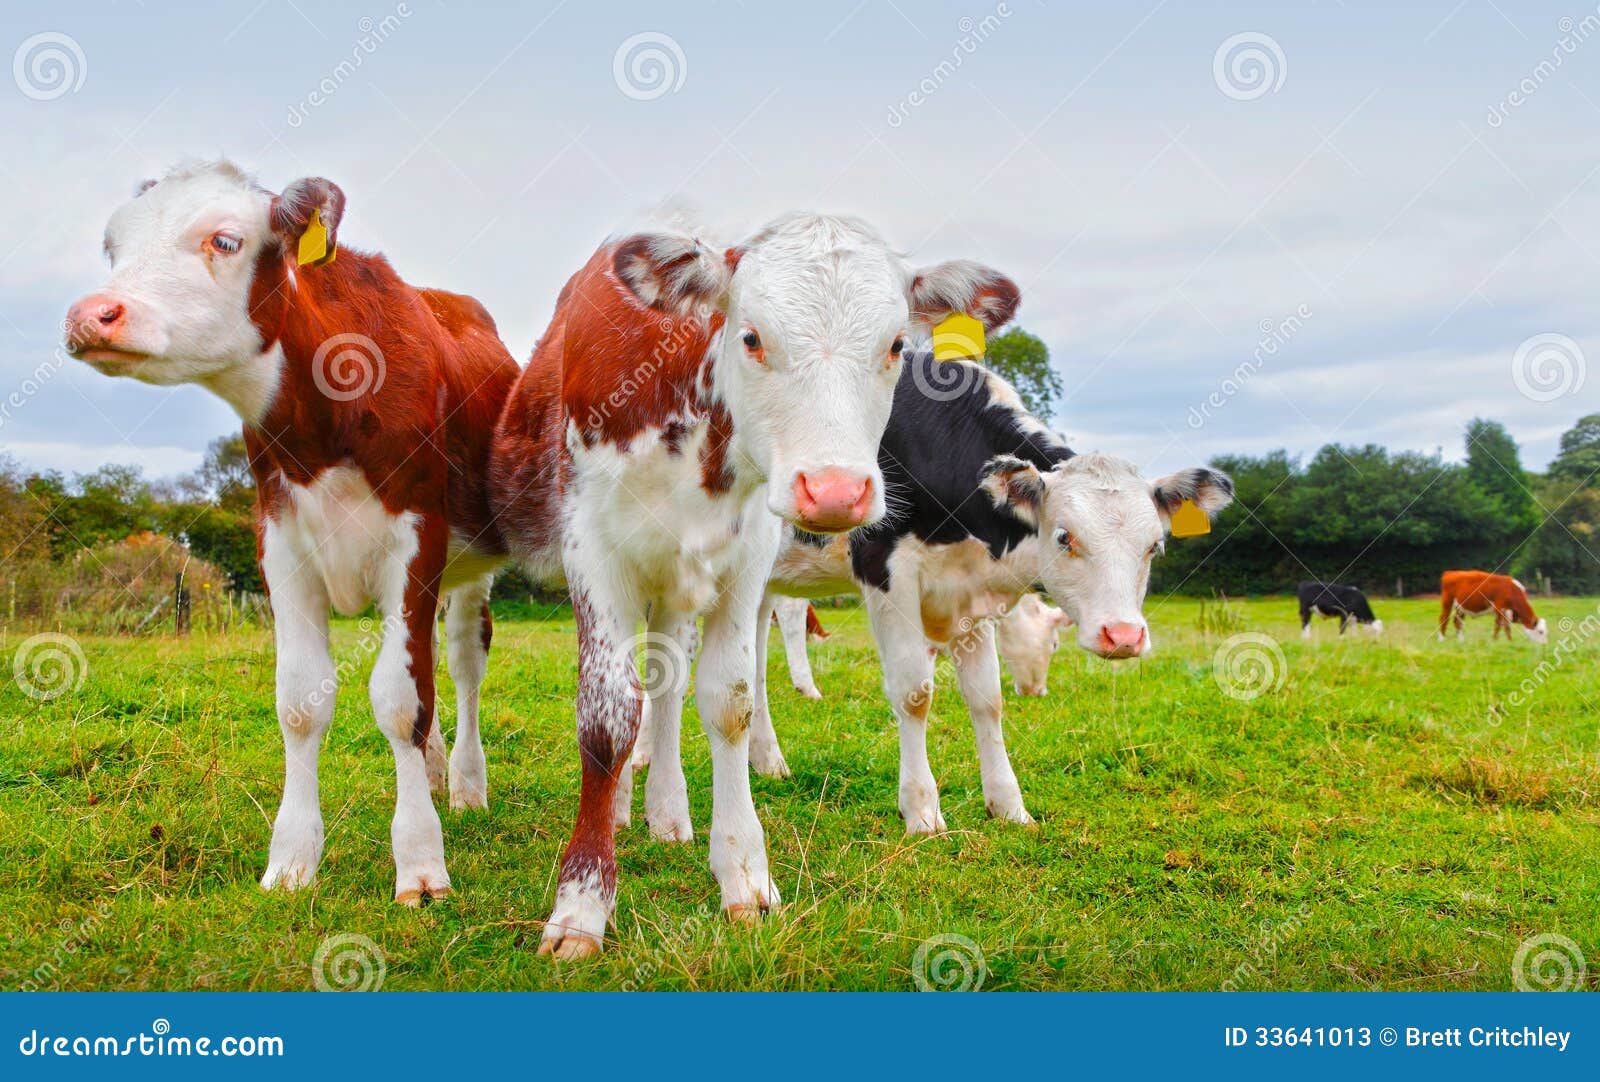 calf cows